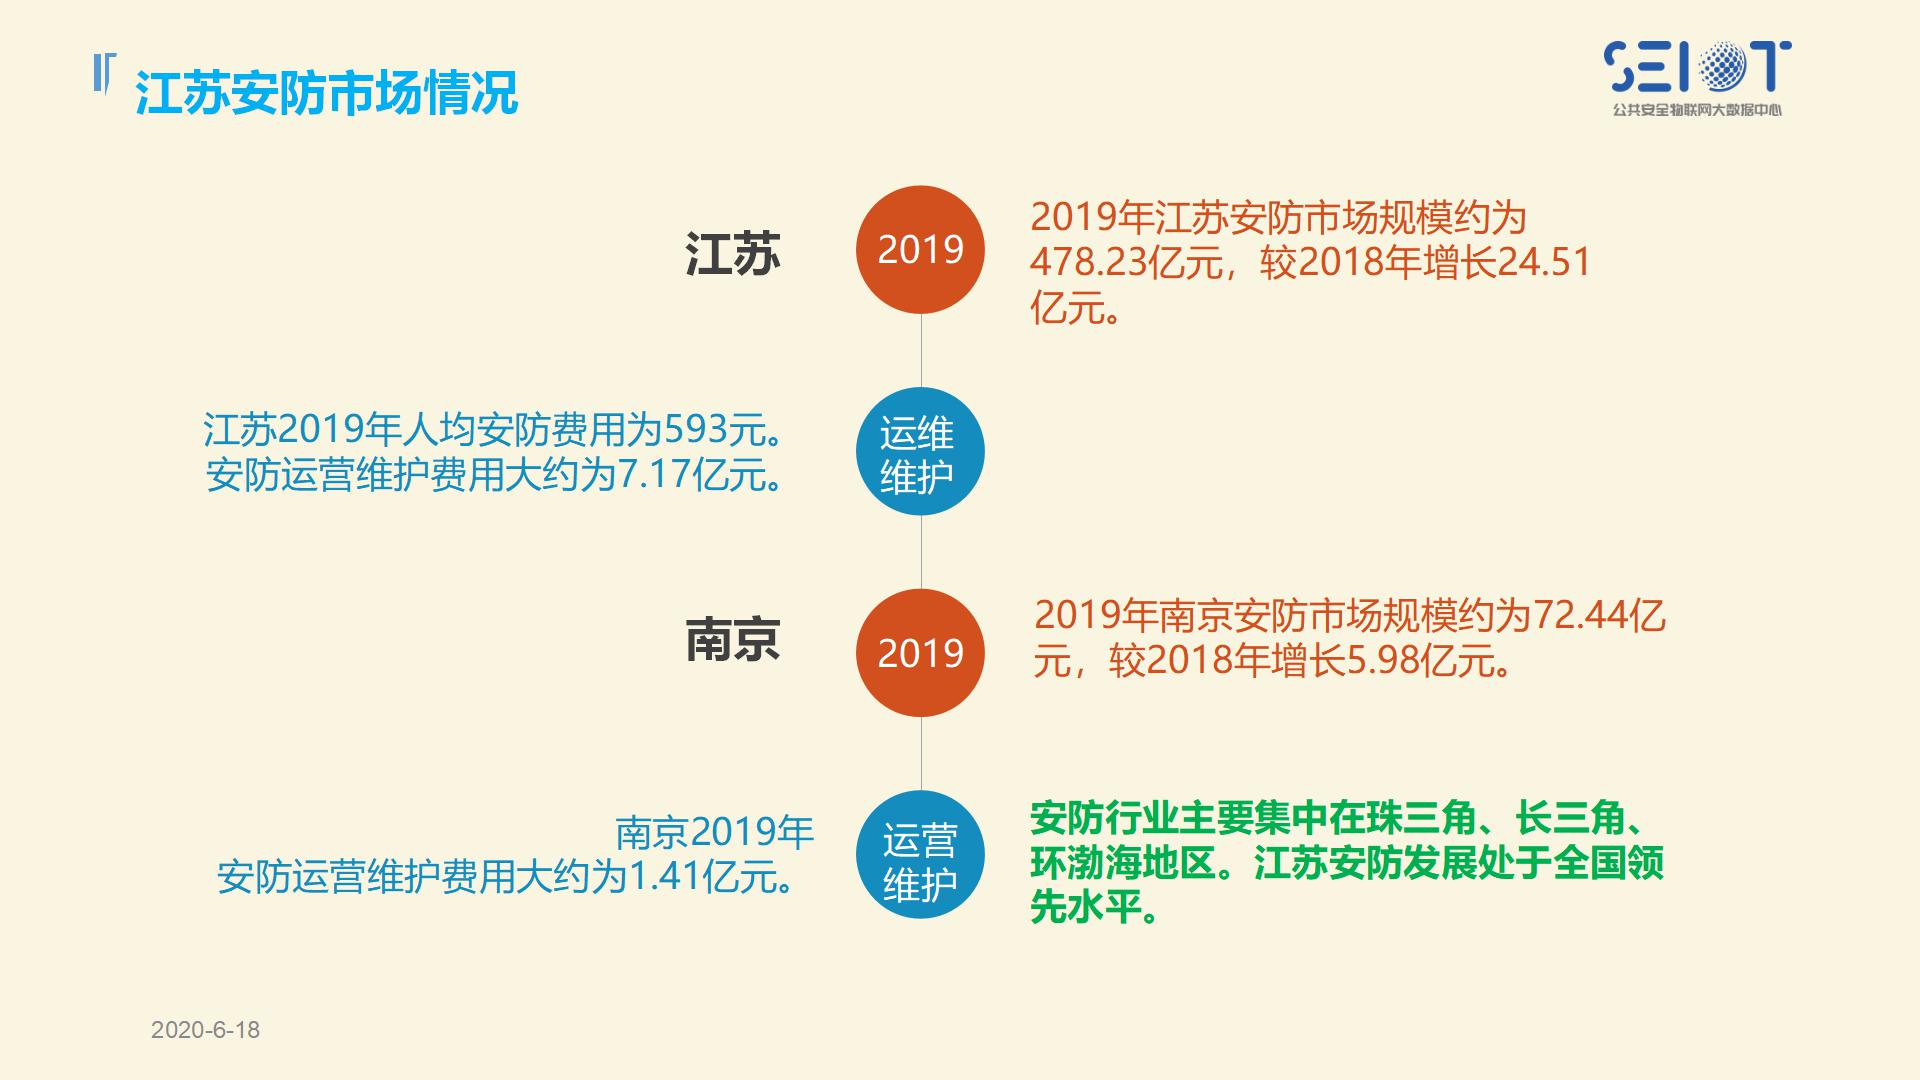 2019中国智能安全产品巡展江苏站(1)_09.jpg